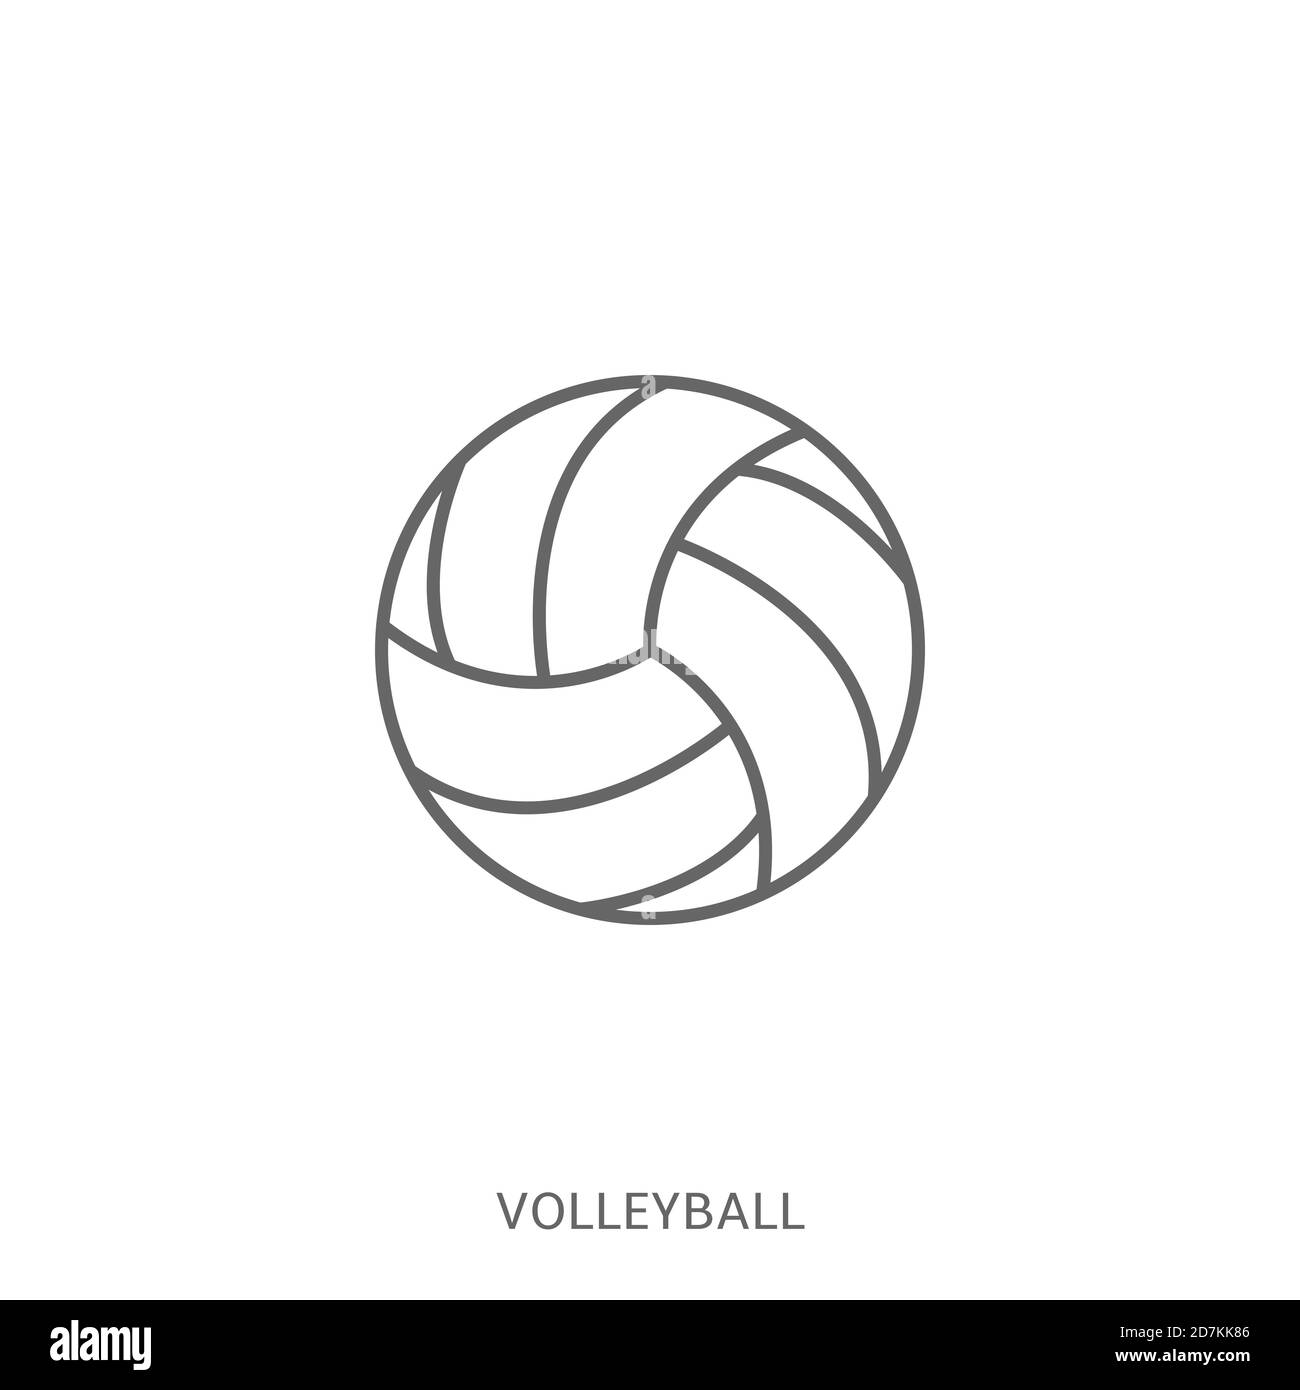 Volleyball ball icon vector Stock Vector